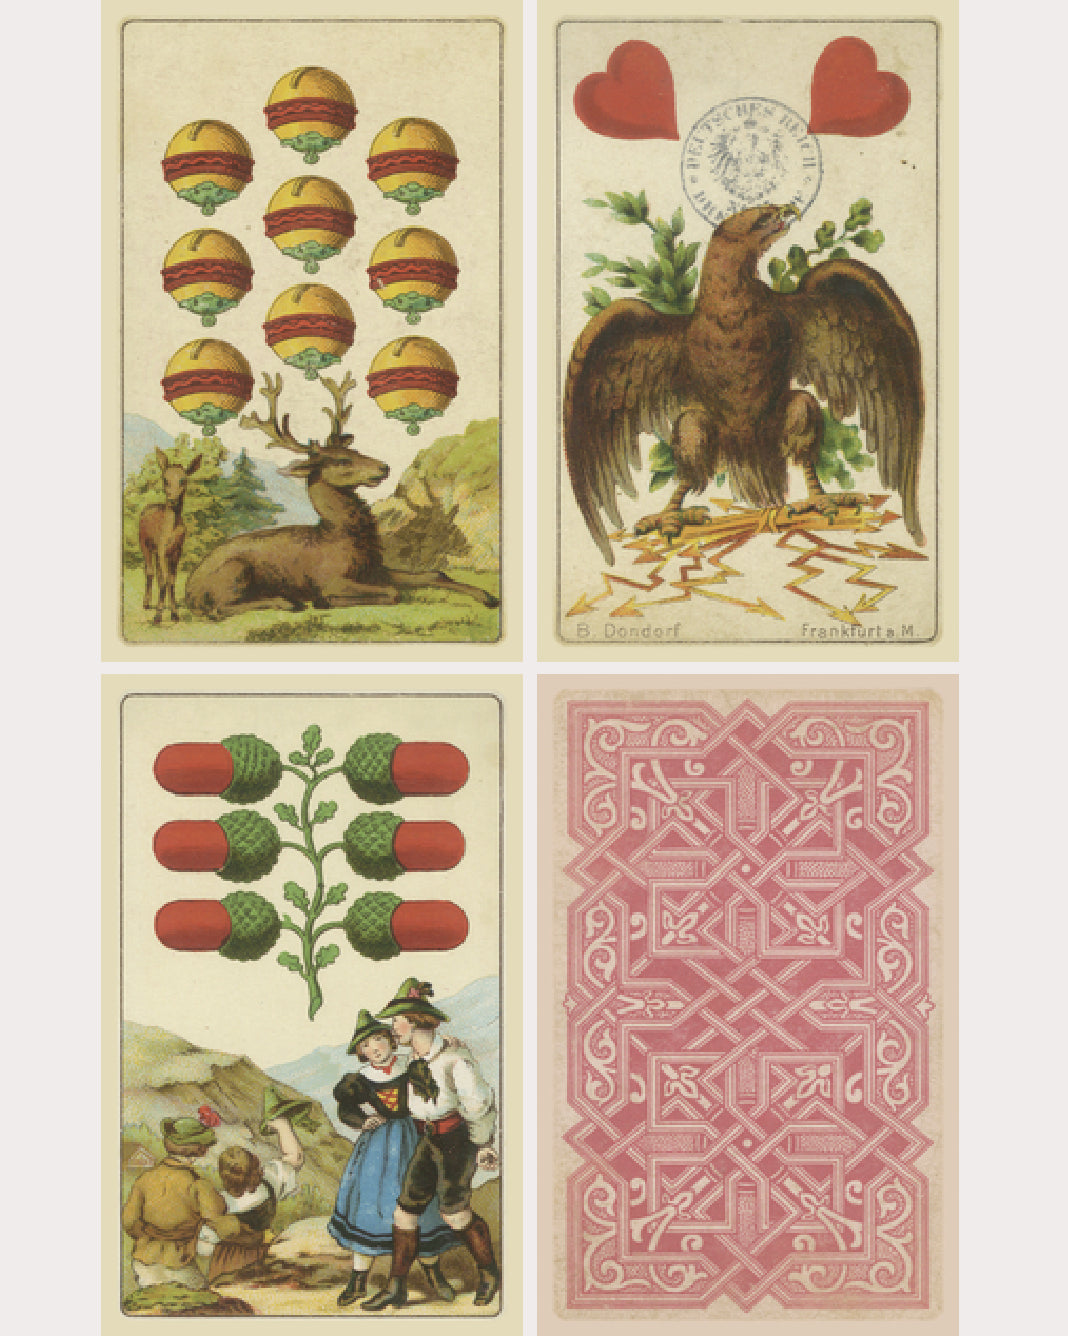 Folk Cards of Destiny